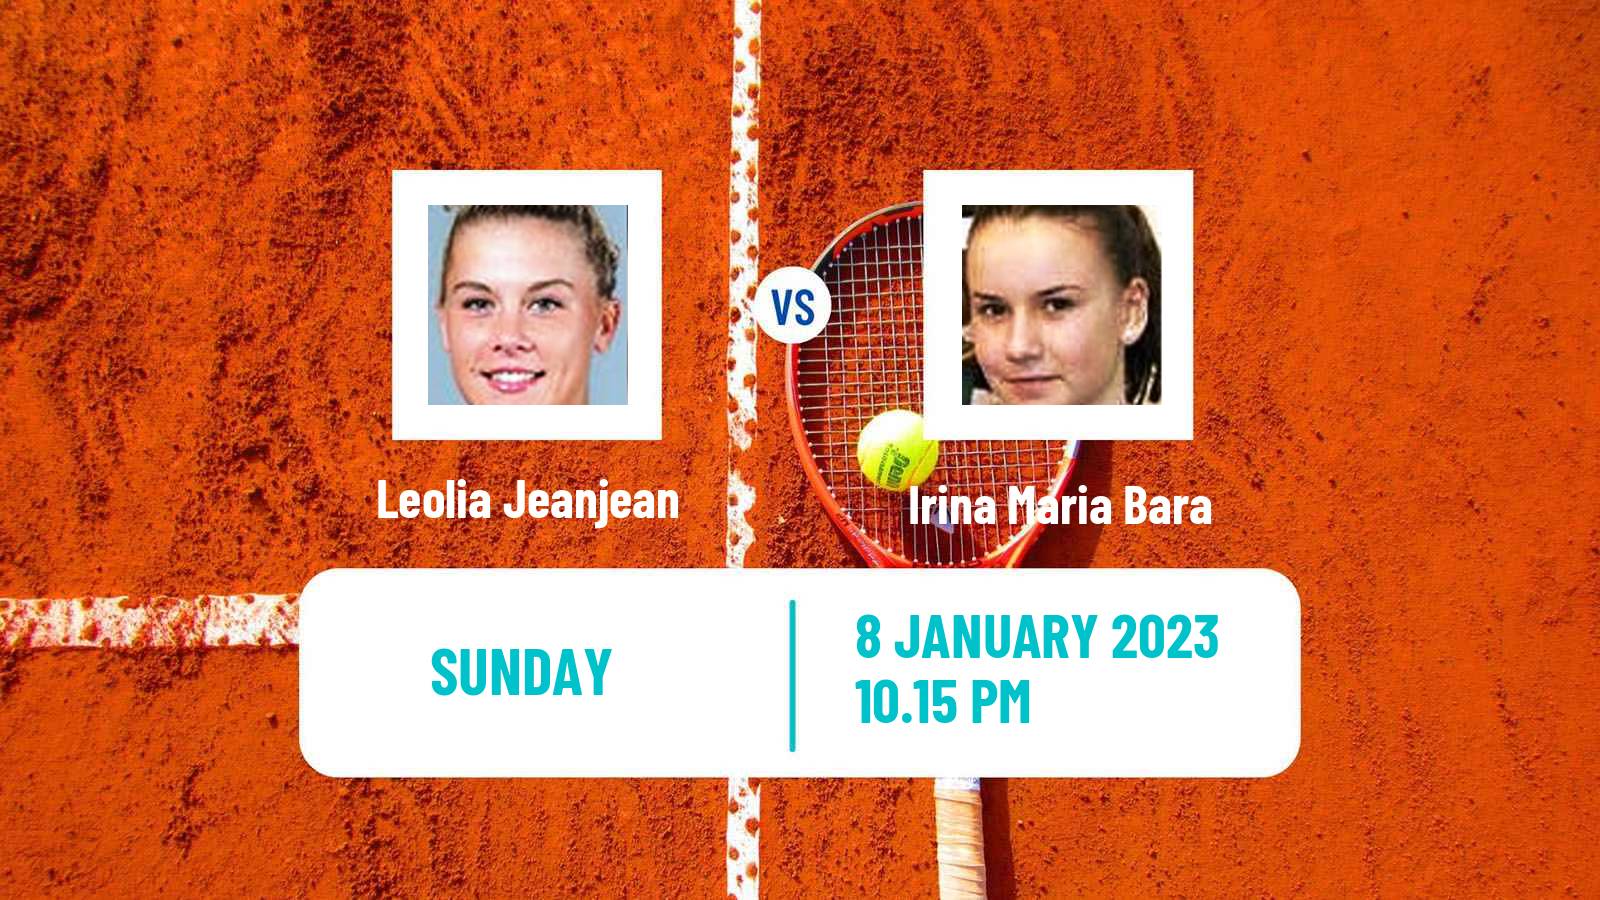 Tennis WTA Australian Open Leolia Jeanjean - Irina Maria Bara